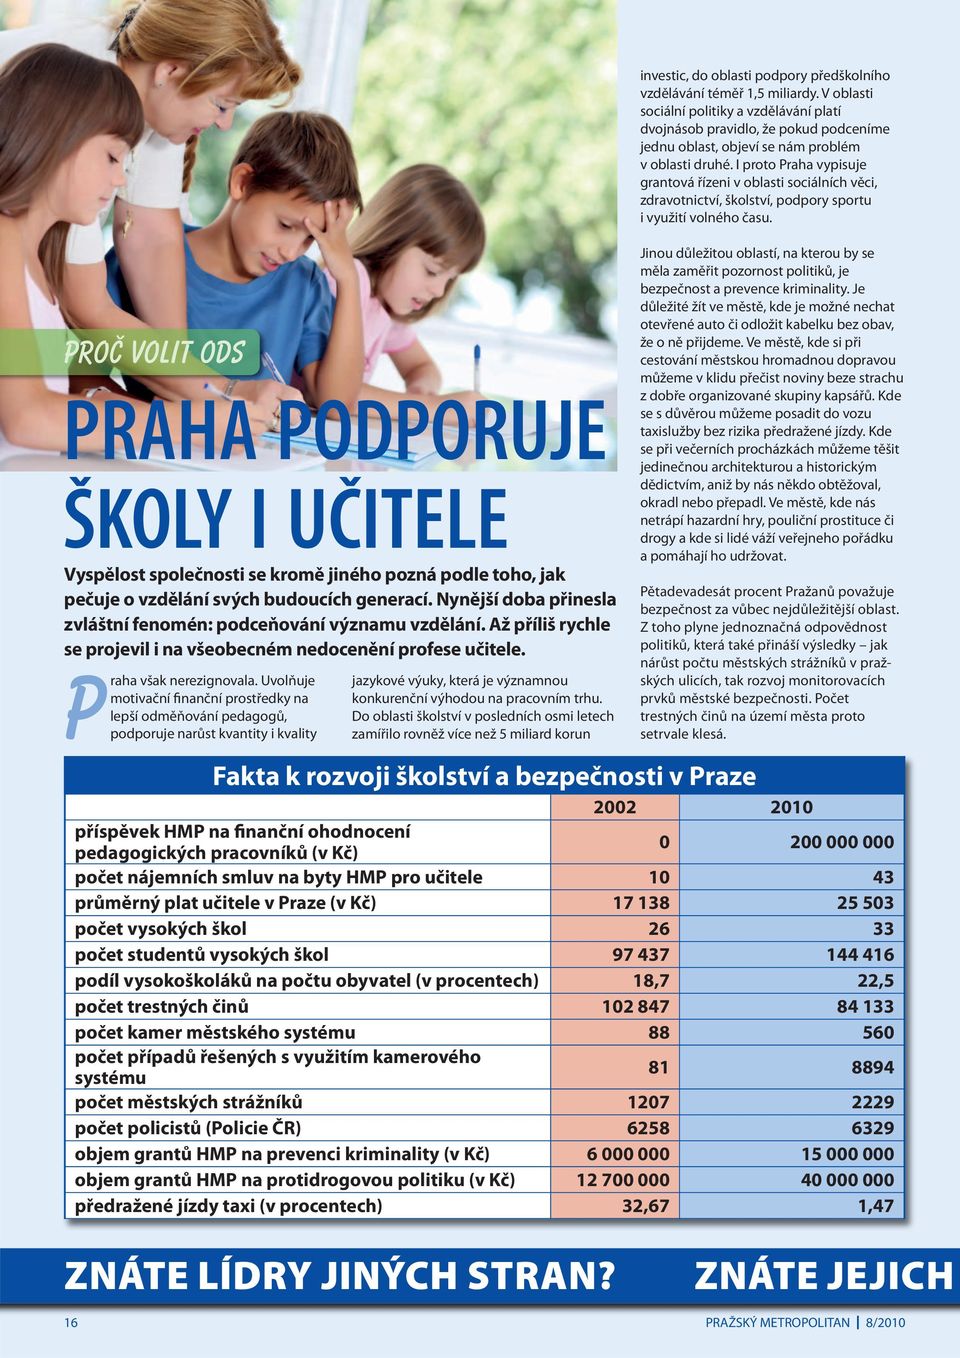 I proto Praha vypisuje grantová řízeni v oblasti sociálních věci, zdravotnictví, školství, podpory sportu i využití volného času.